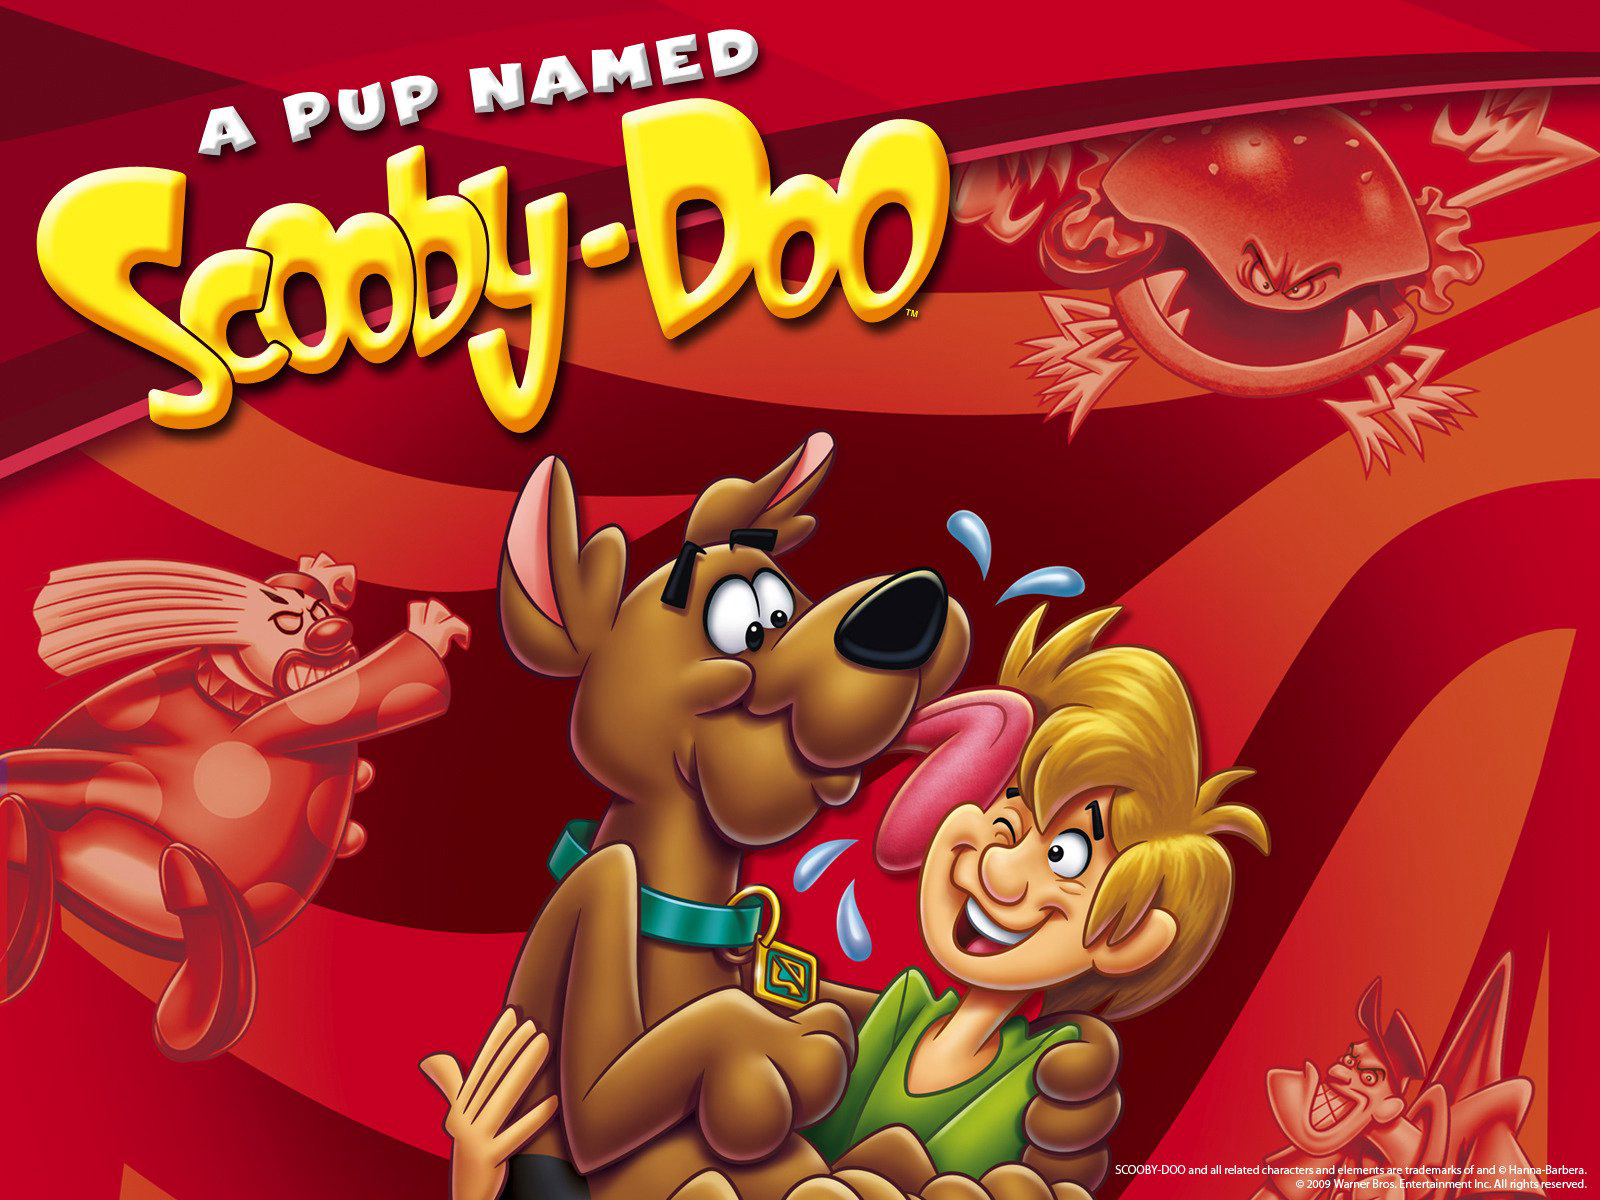 A Pup Named Scooby-Doo (Season 2) / A Pup Named Scooby-Doo (Season 2) (1989)